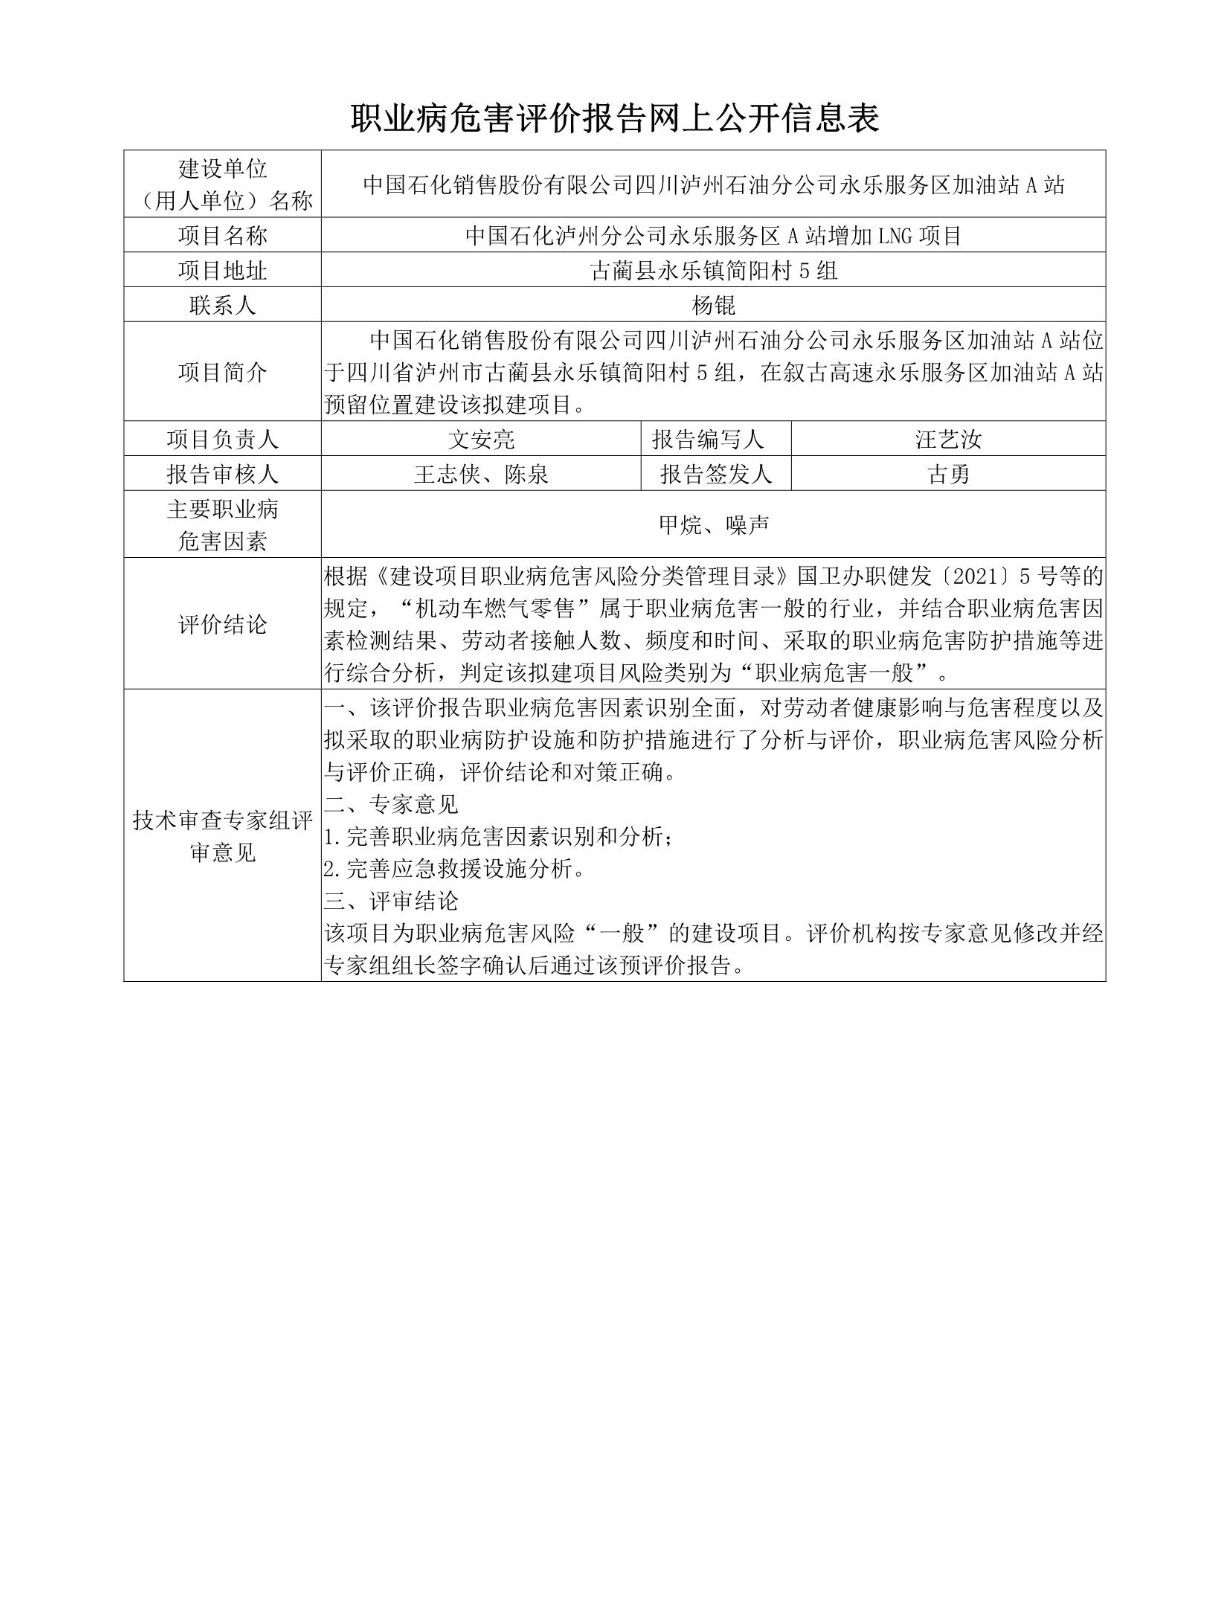 中国石化泸州分公司永乐服务区A站增加LNG项目职业病危害预评价